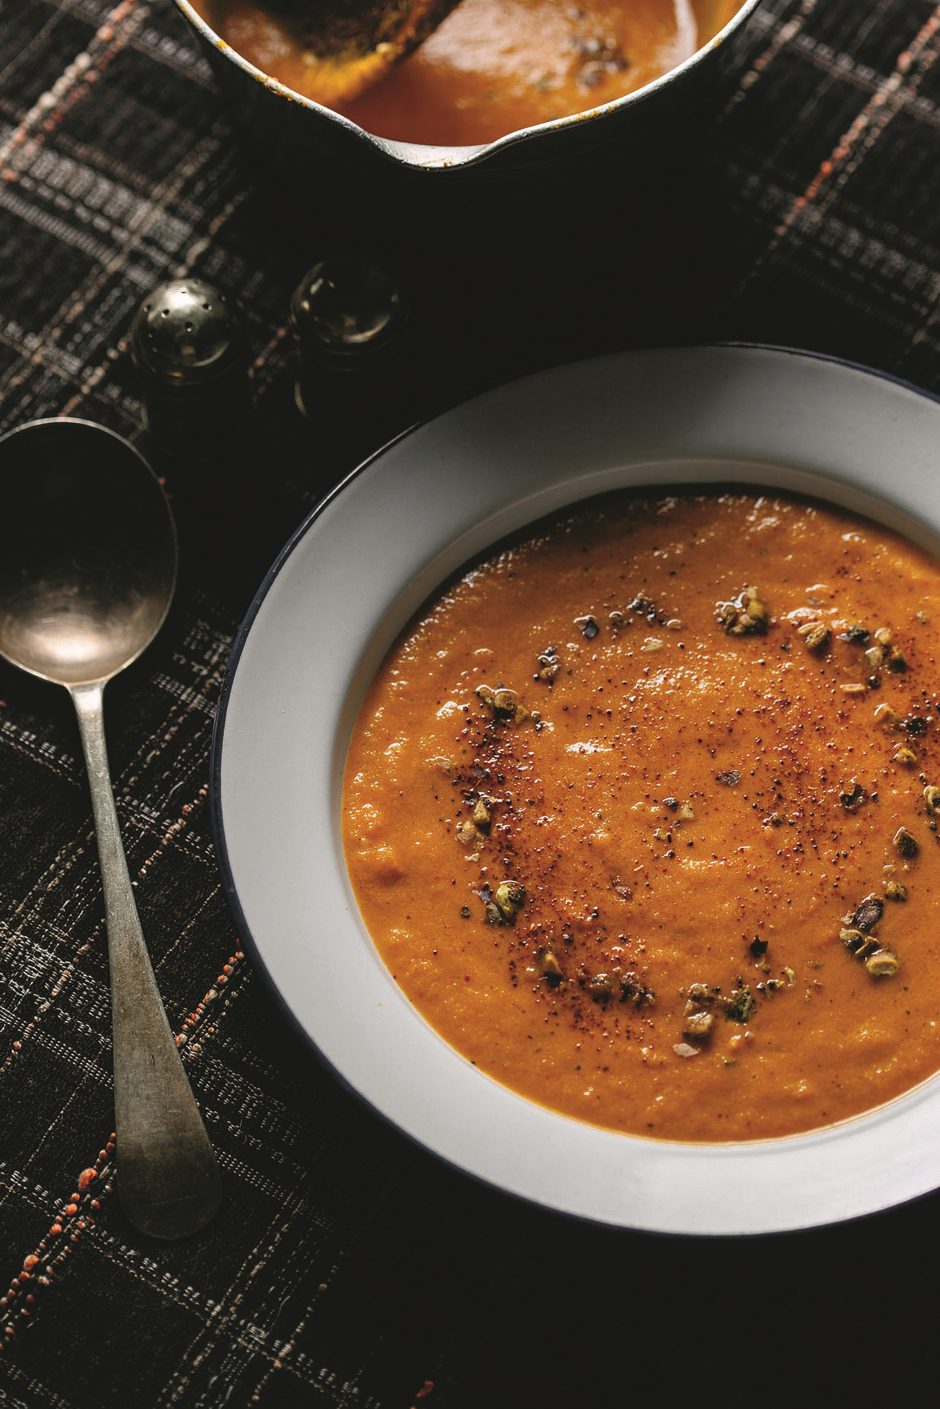 Trintos daržovių sriubos: ir skanu, ir sveika (receptai)